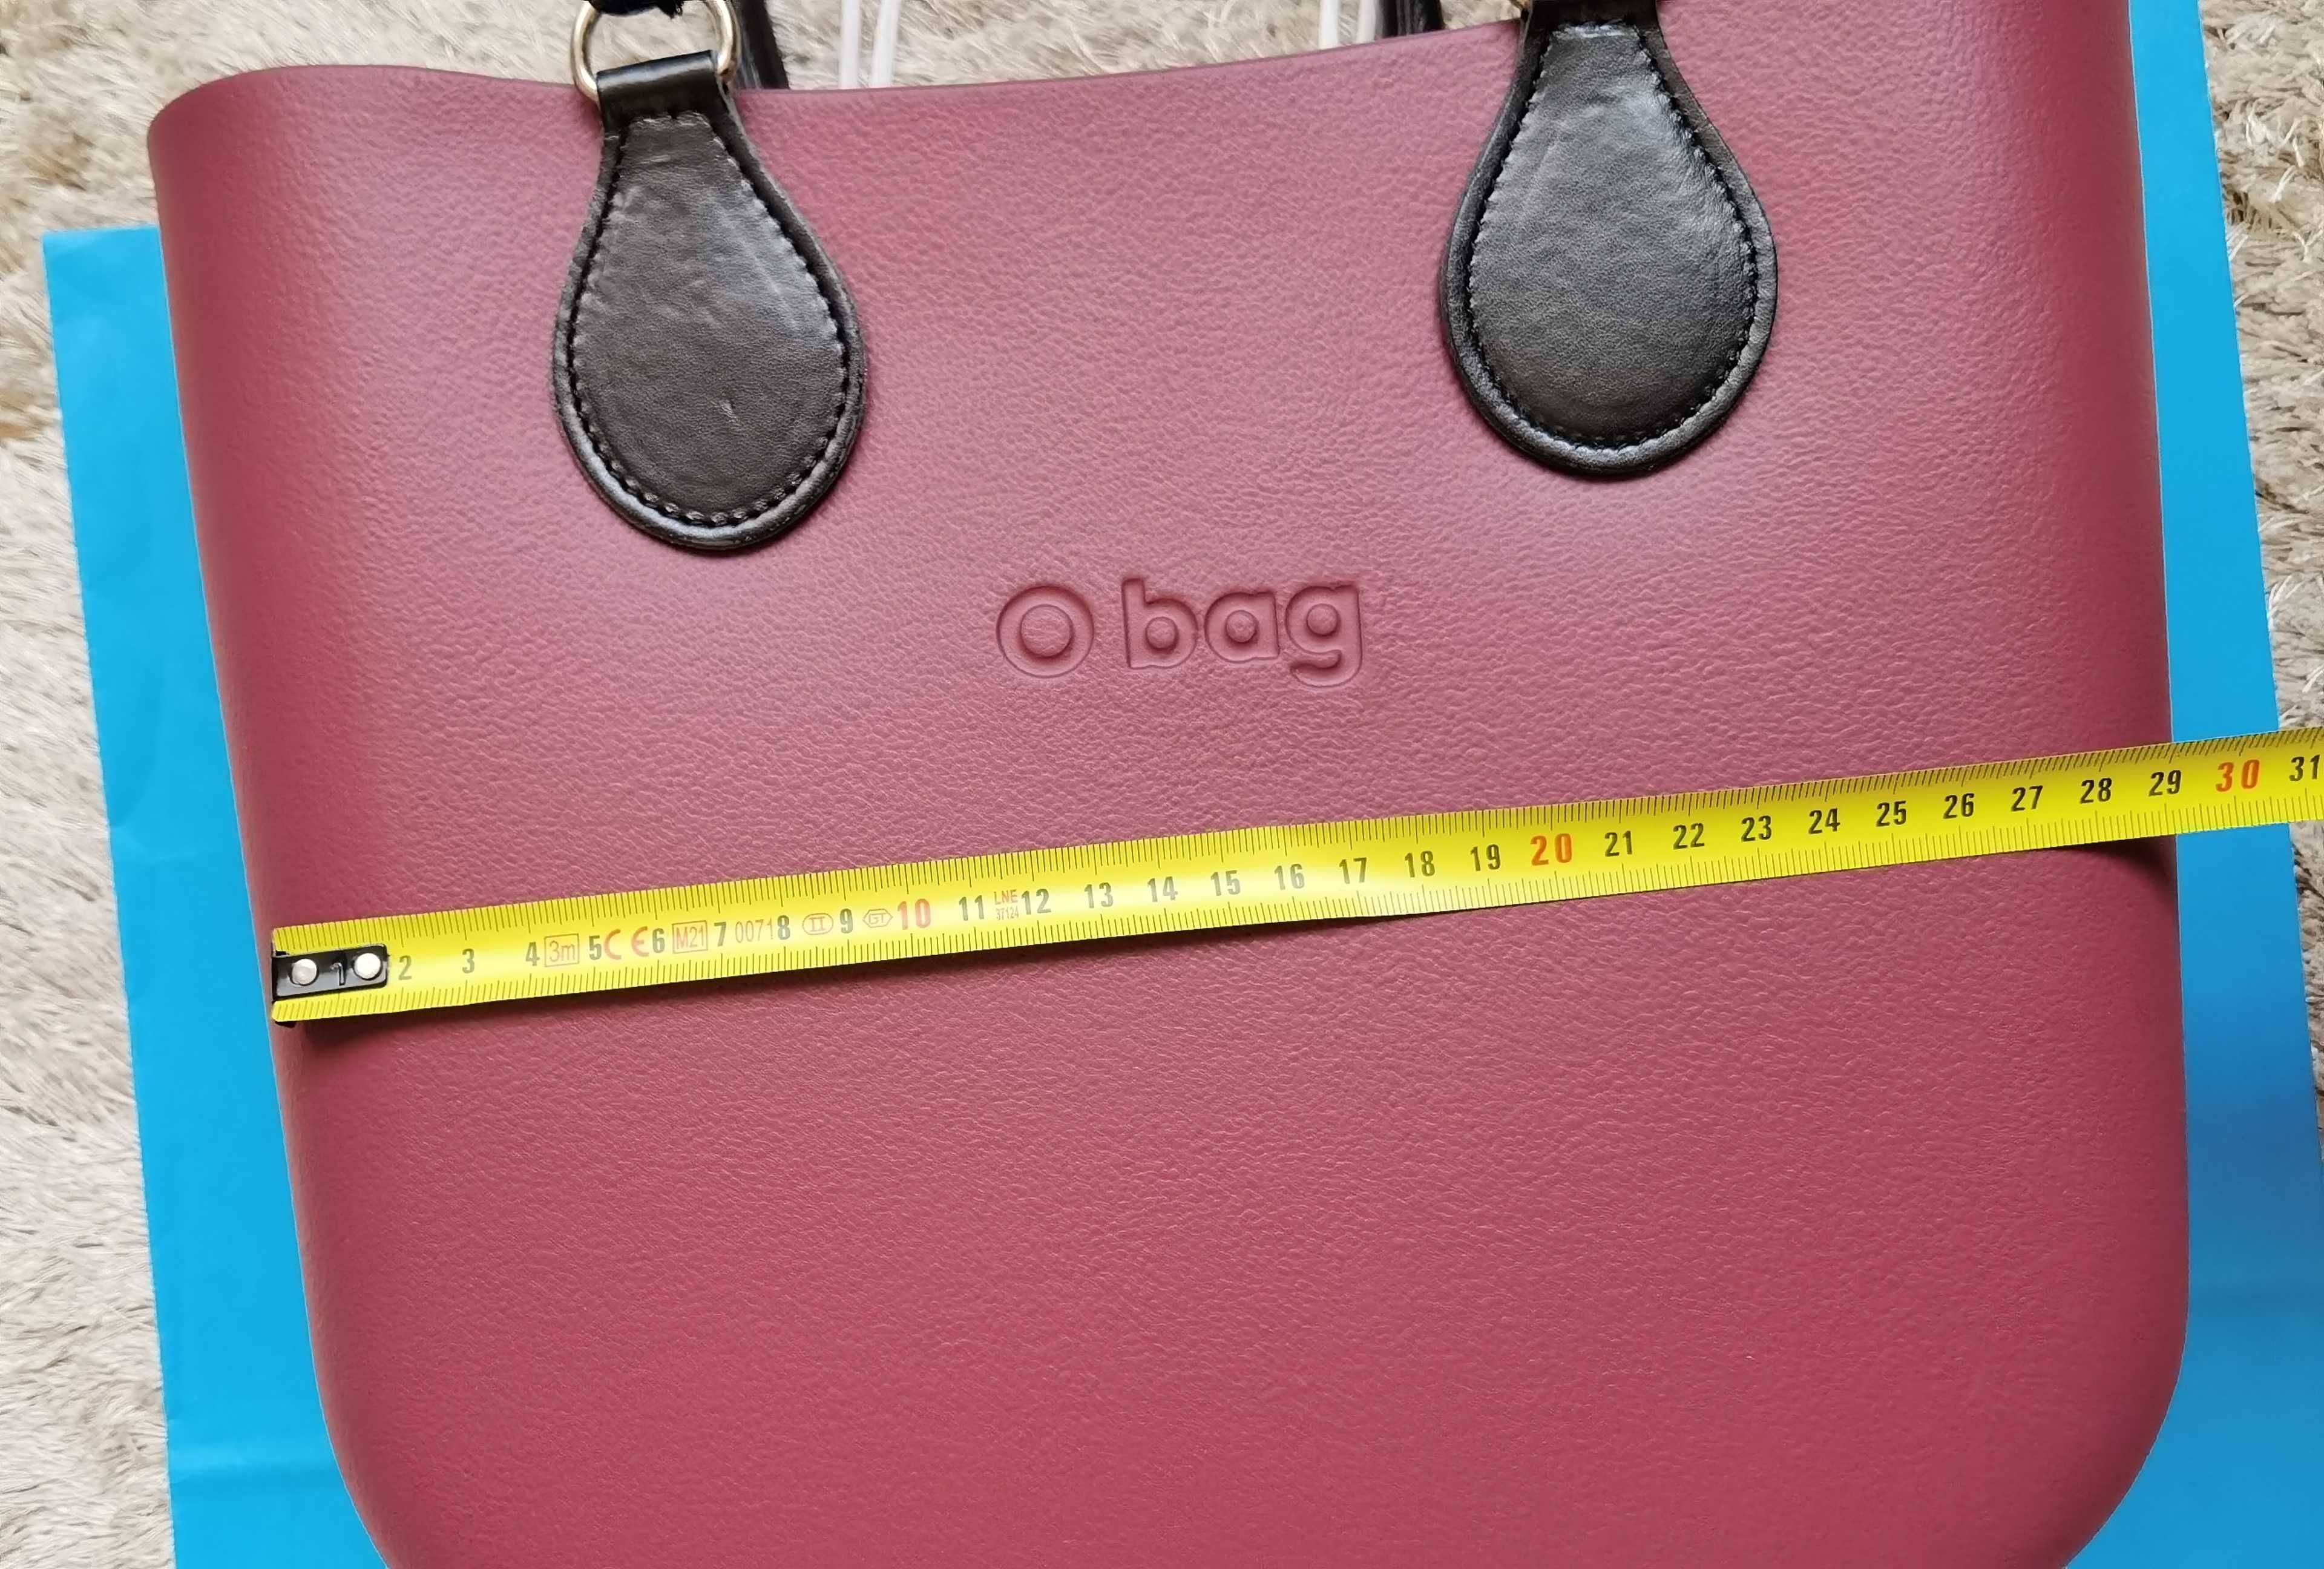 Дамска чанта O bag